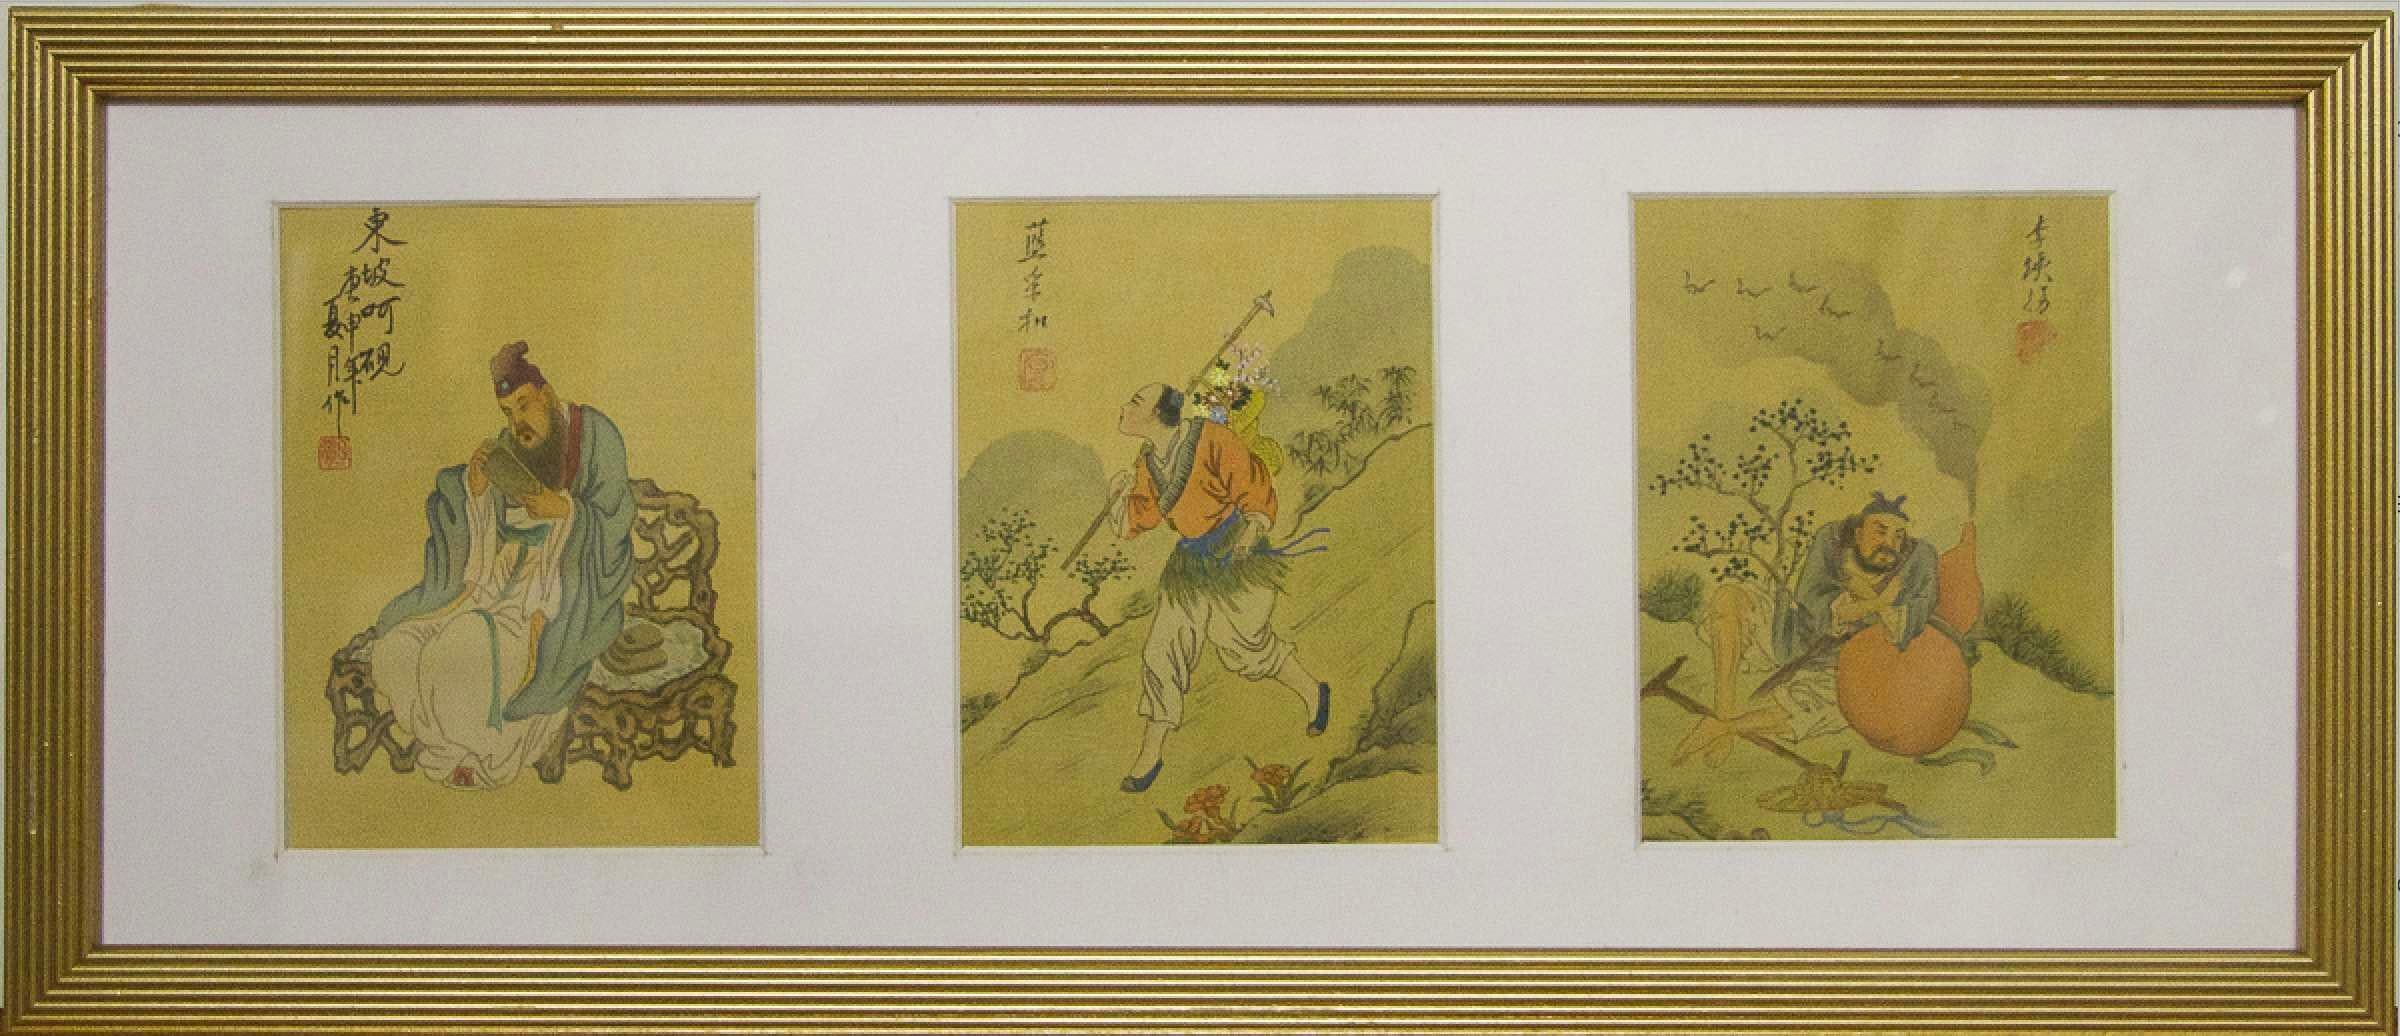 Portrait Painting Unknown - Portraits encadrés et peints sur écran en soie chinoise - Fabriqués en Chine 